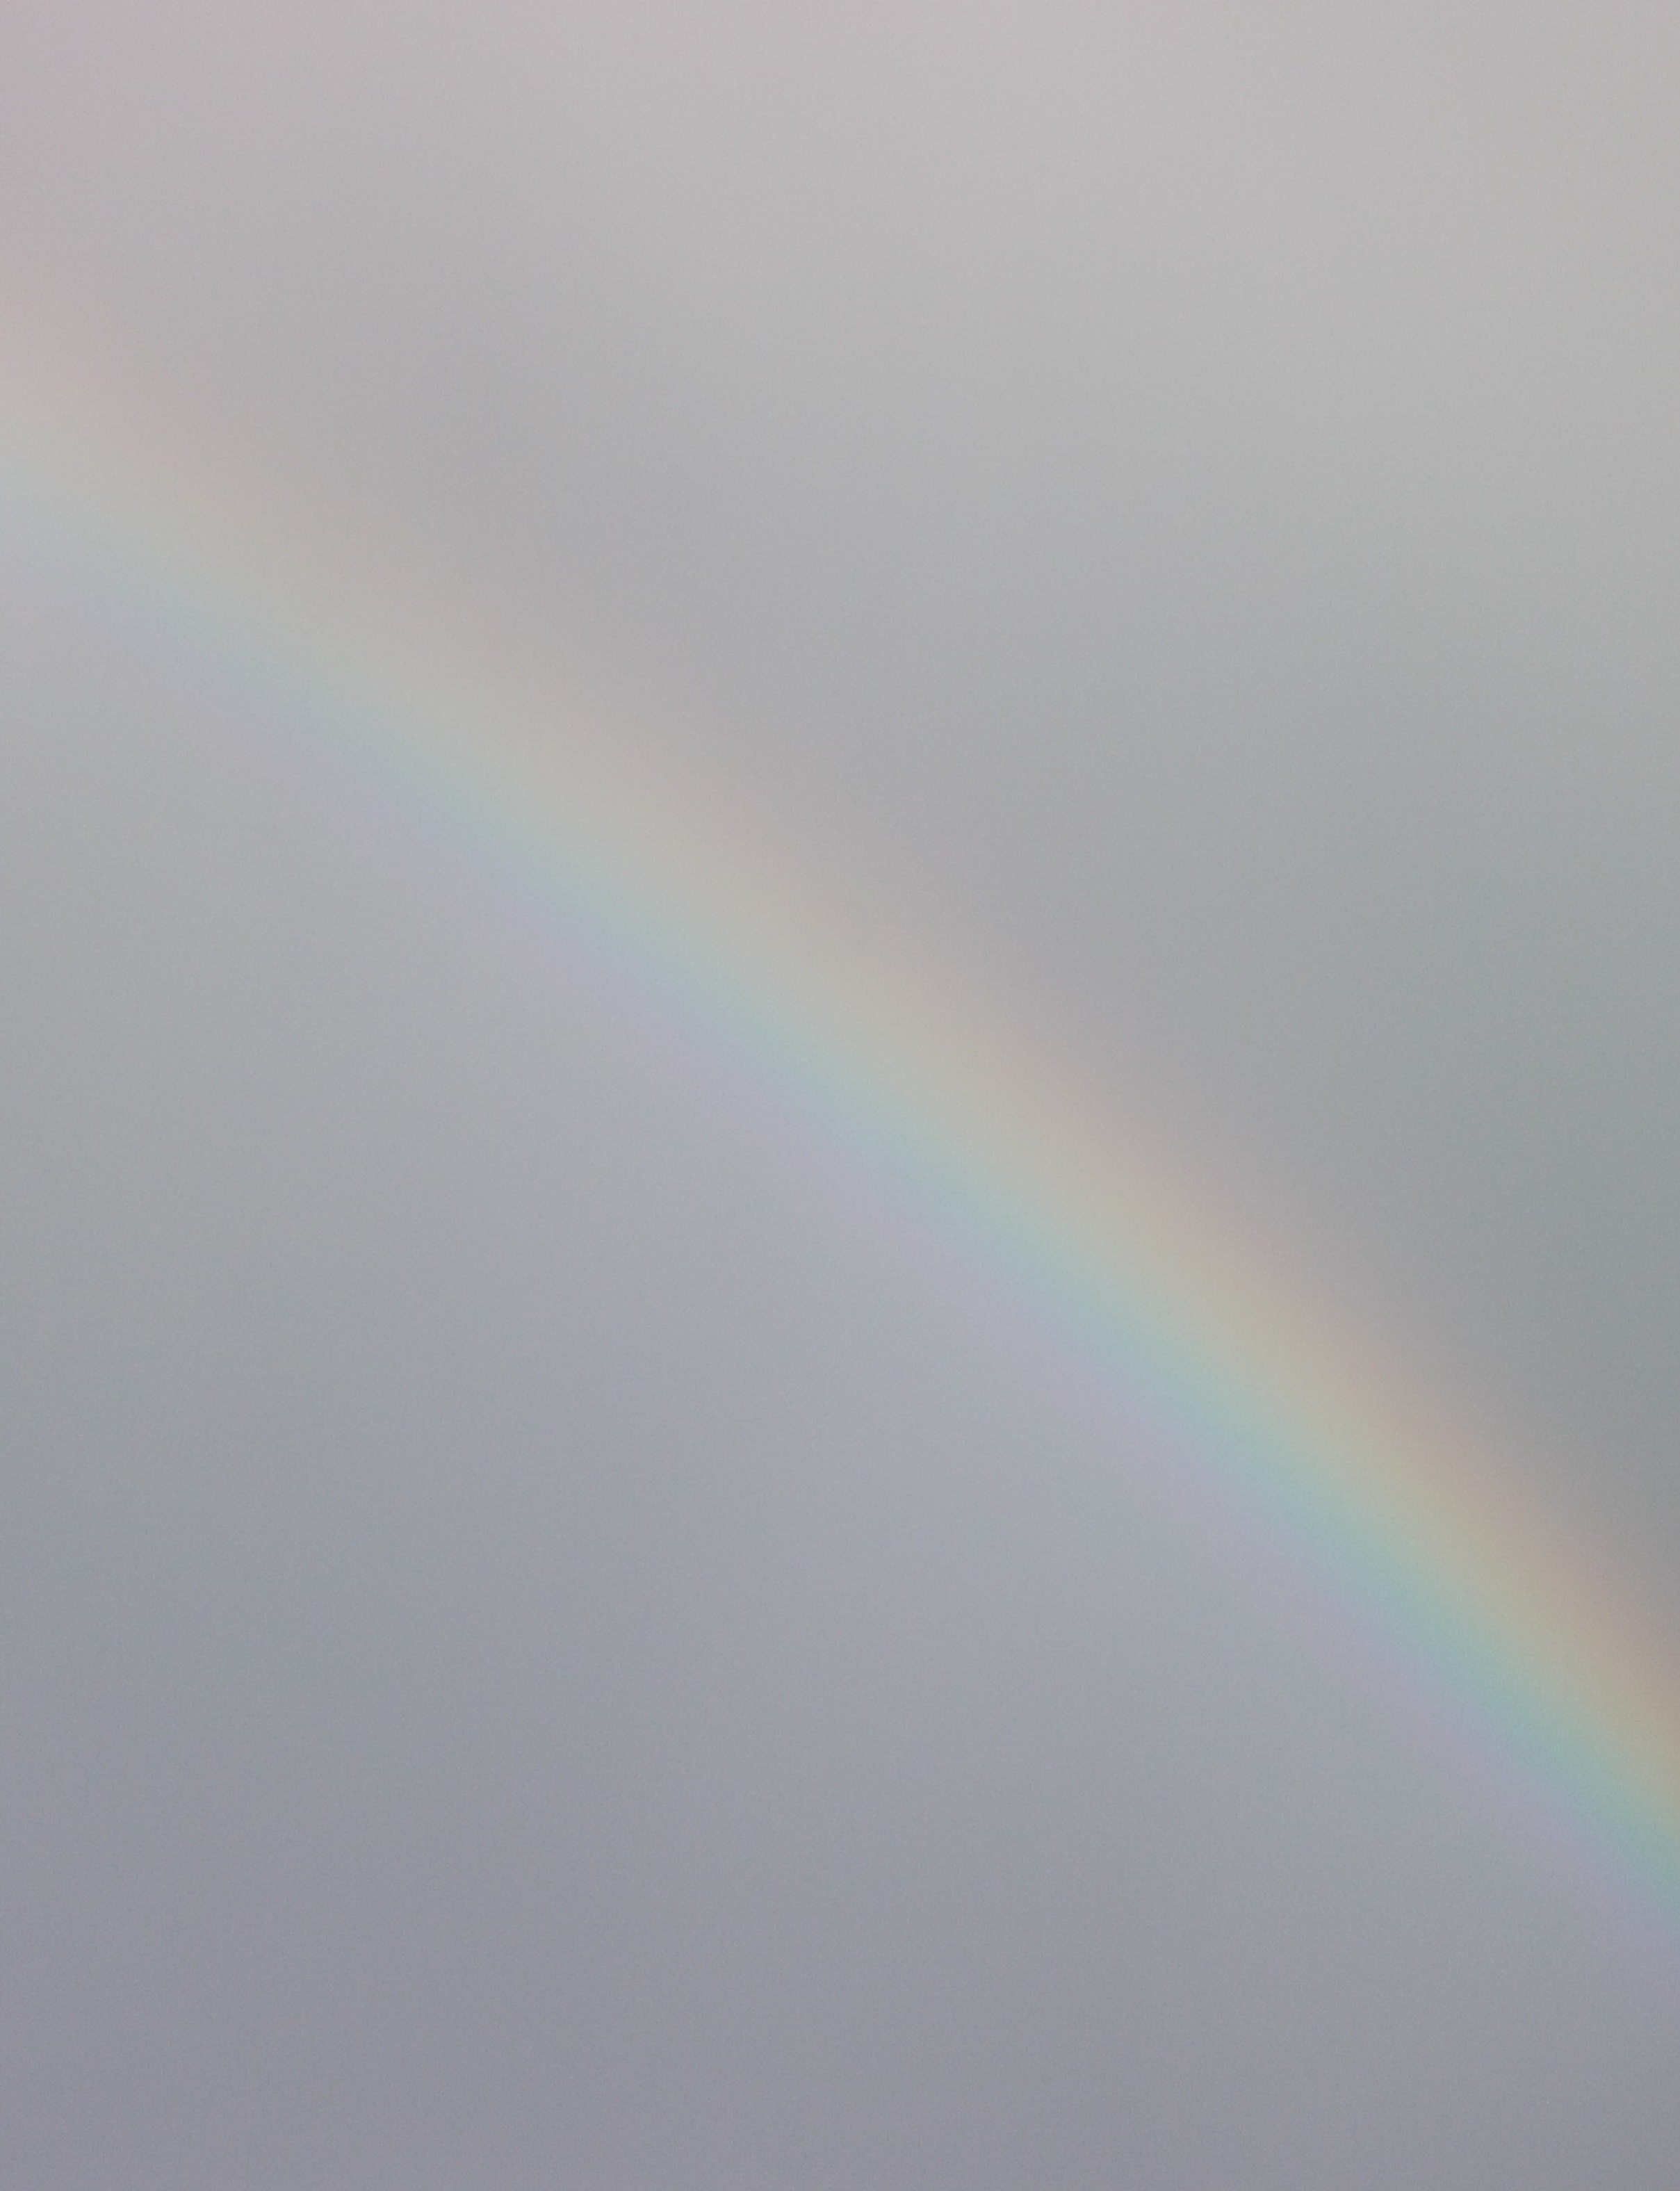 Photo I took of a rainbow on 1-24-17